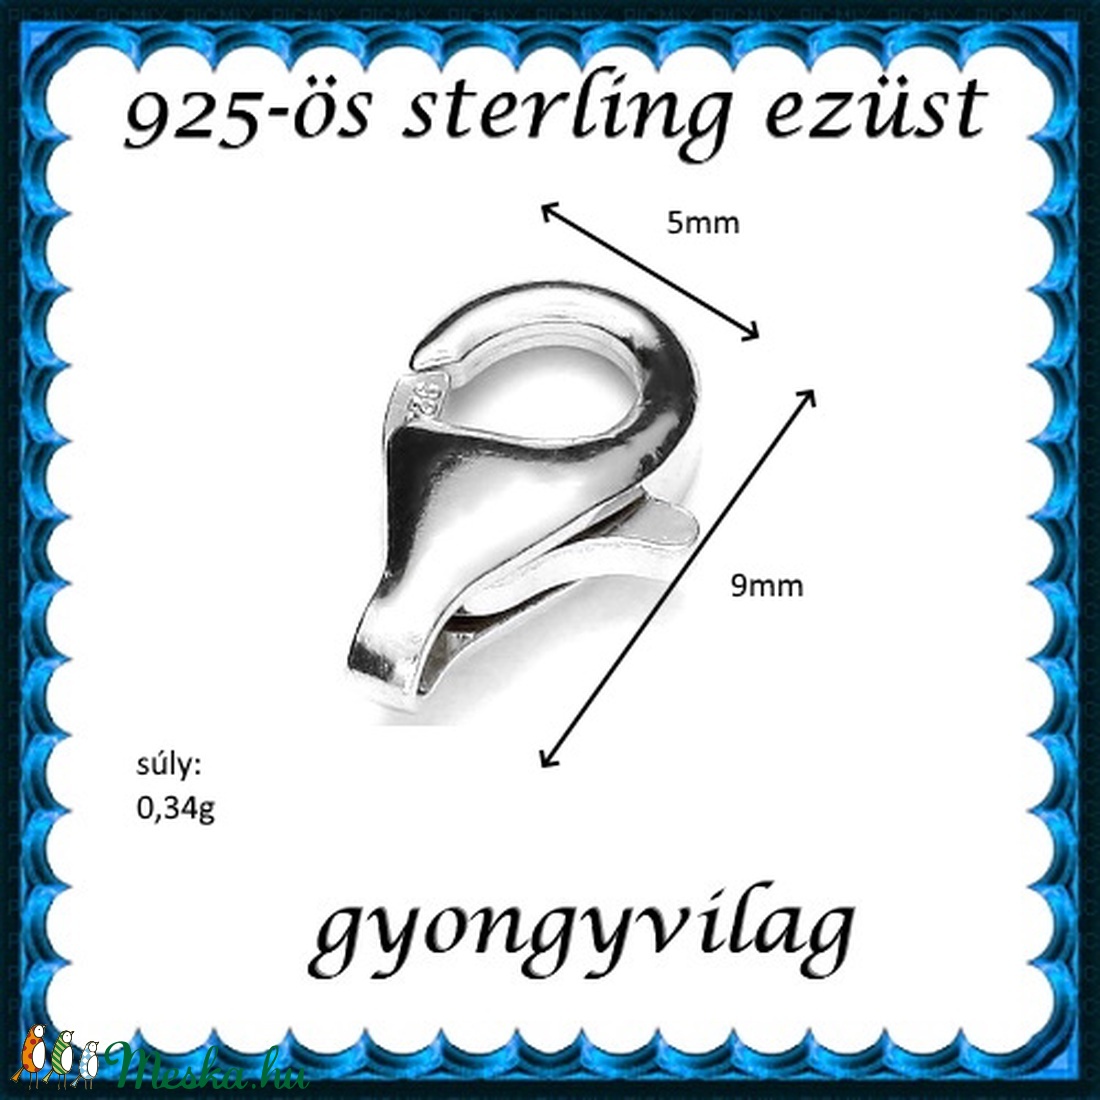 925-ös ezüst 1soros lánckapocs ELK 1s 39-9 2db/csomag - gyöngy, ékszerkellék - egyéb alkatrész - Meska.hu